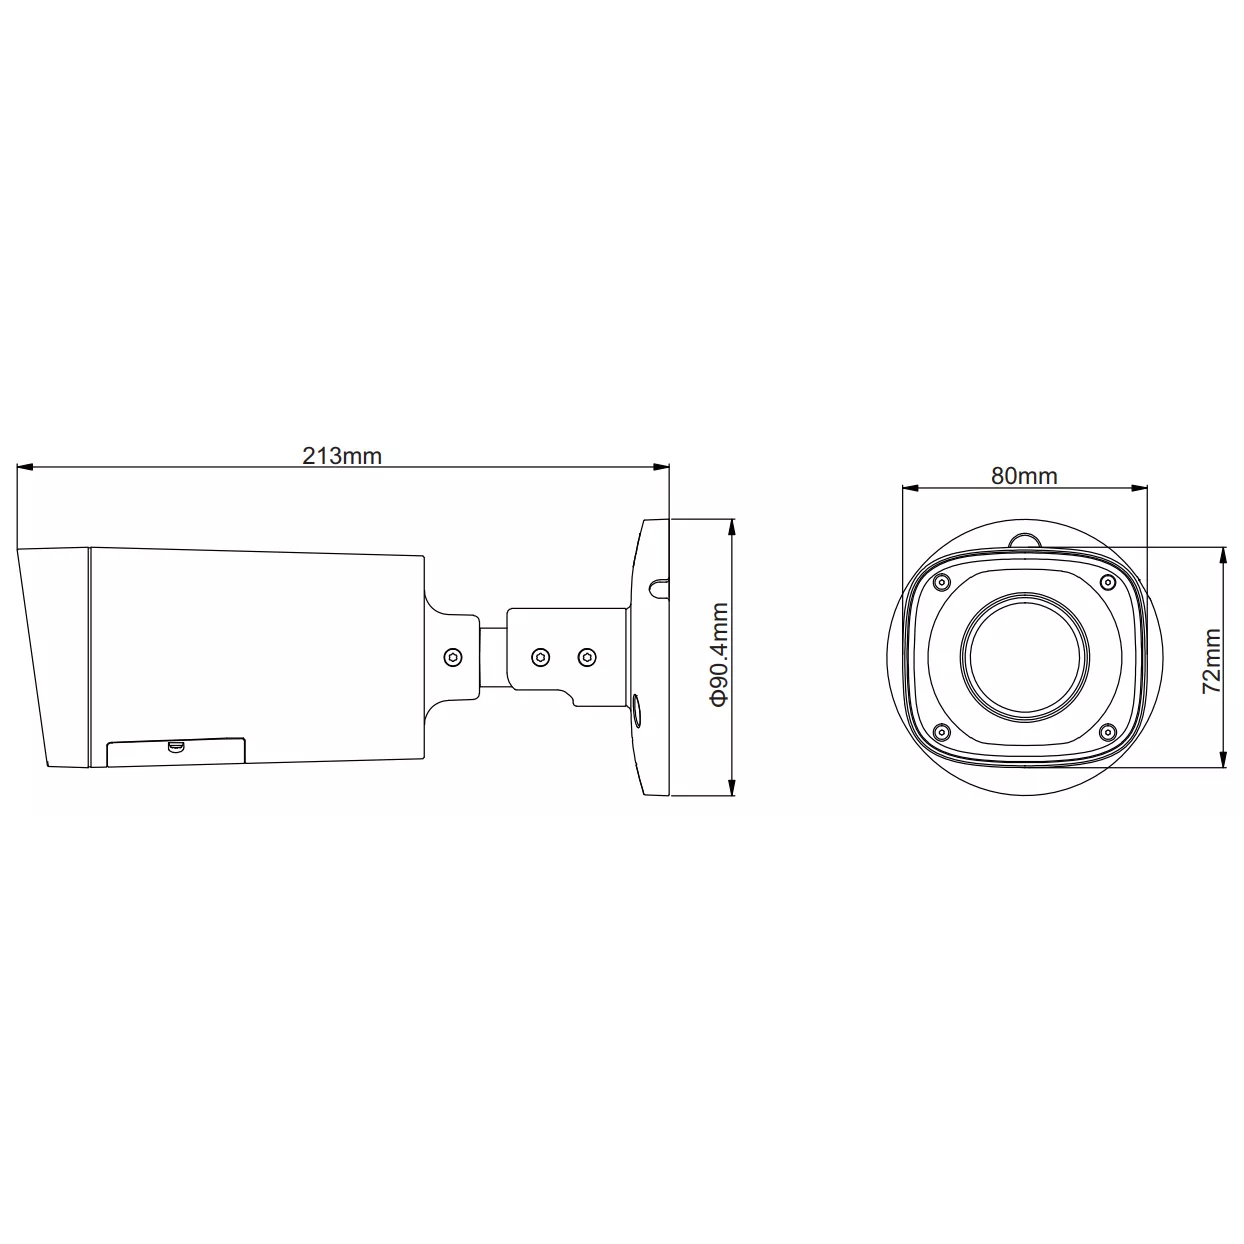 HDCVI уличная камера Dahua DH-HAC-HFW1200RP-VF 1080p, 2.7-12мм, ИК до 30м, 12В (потеря товарного вида)